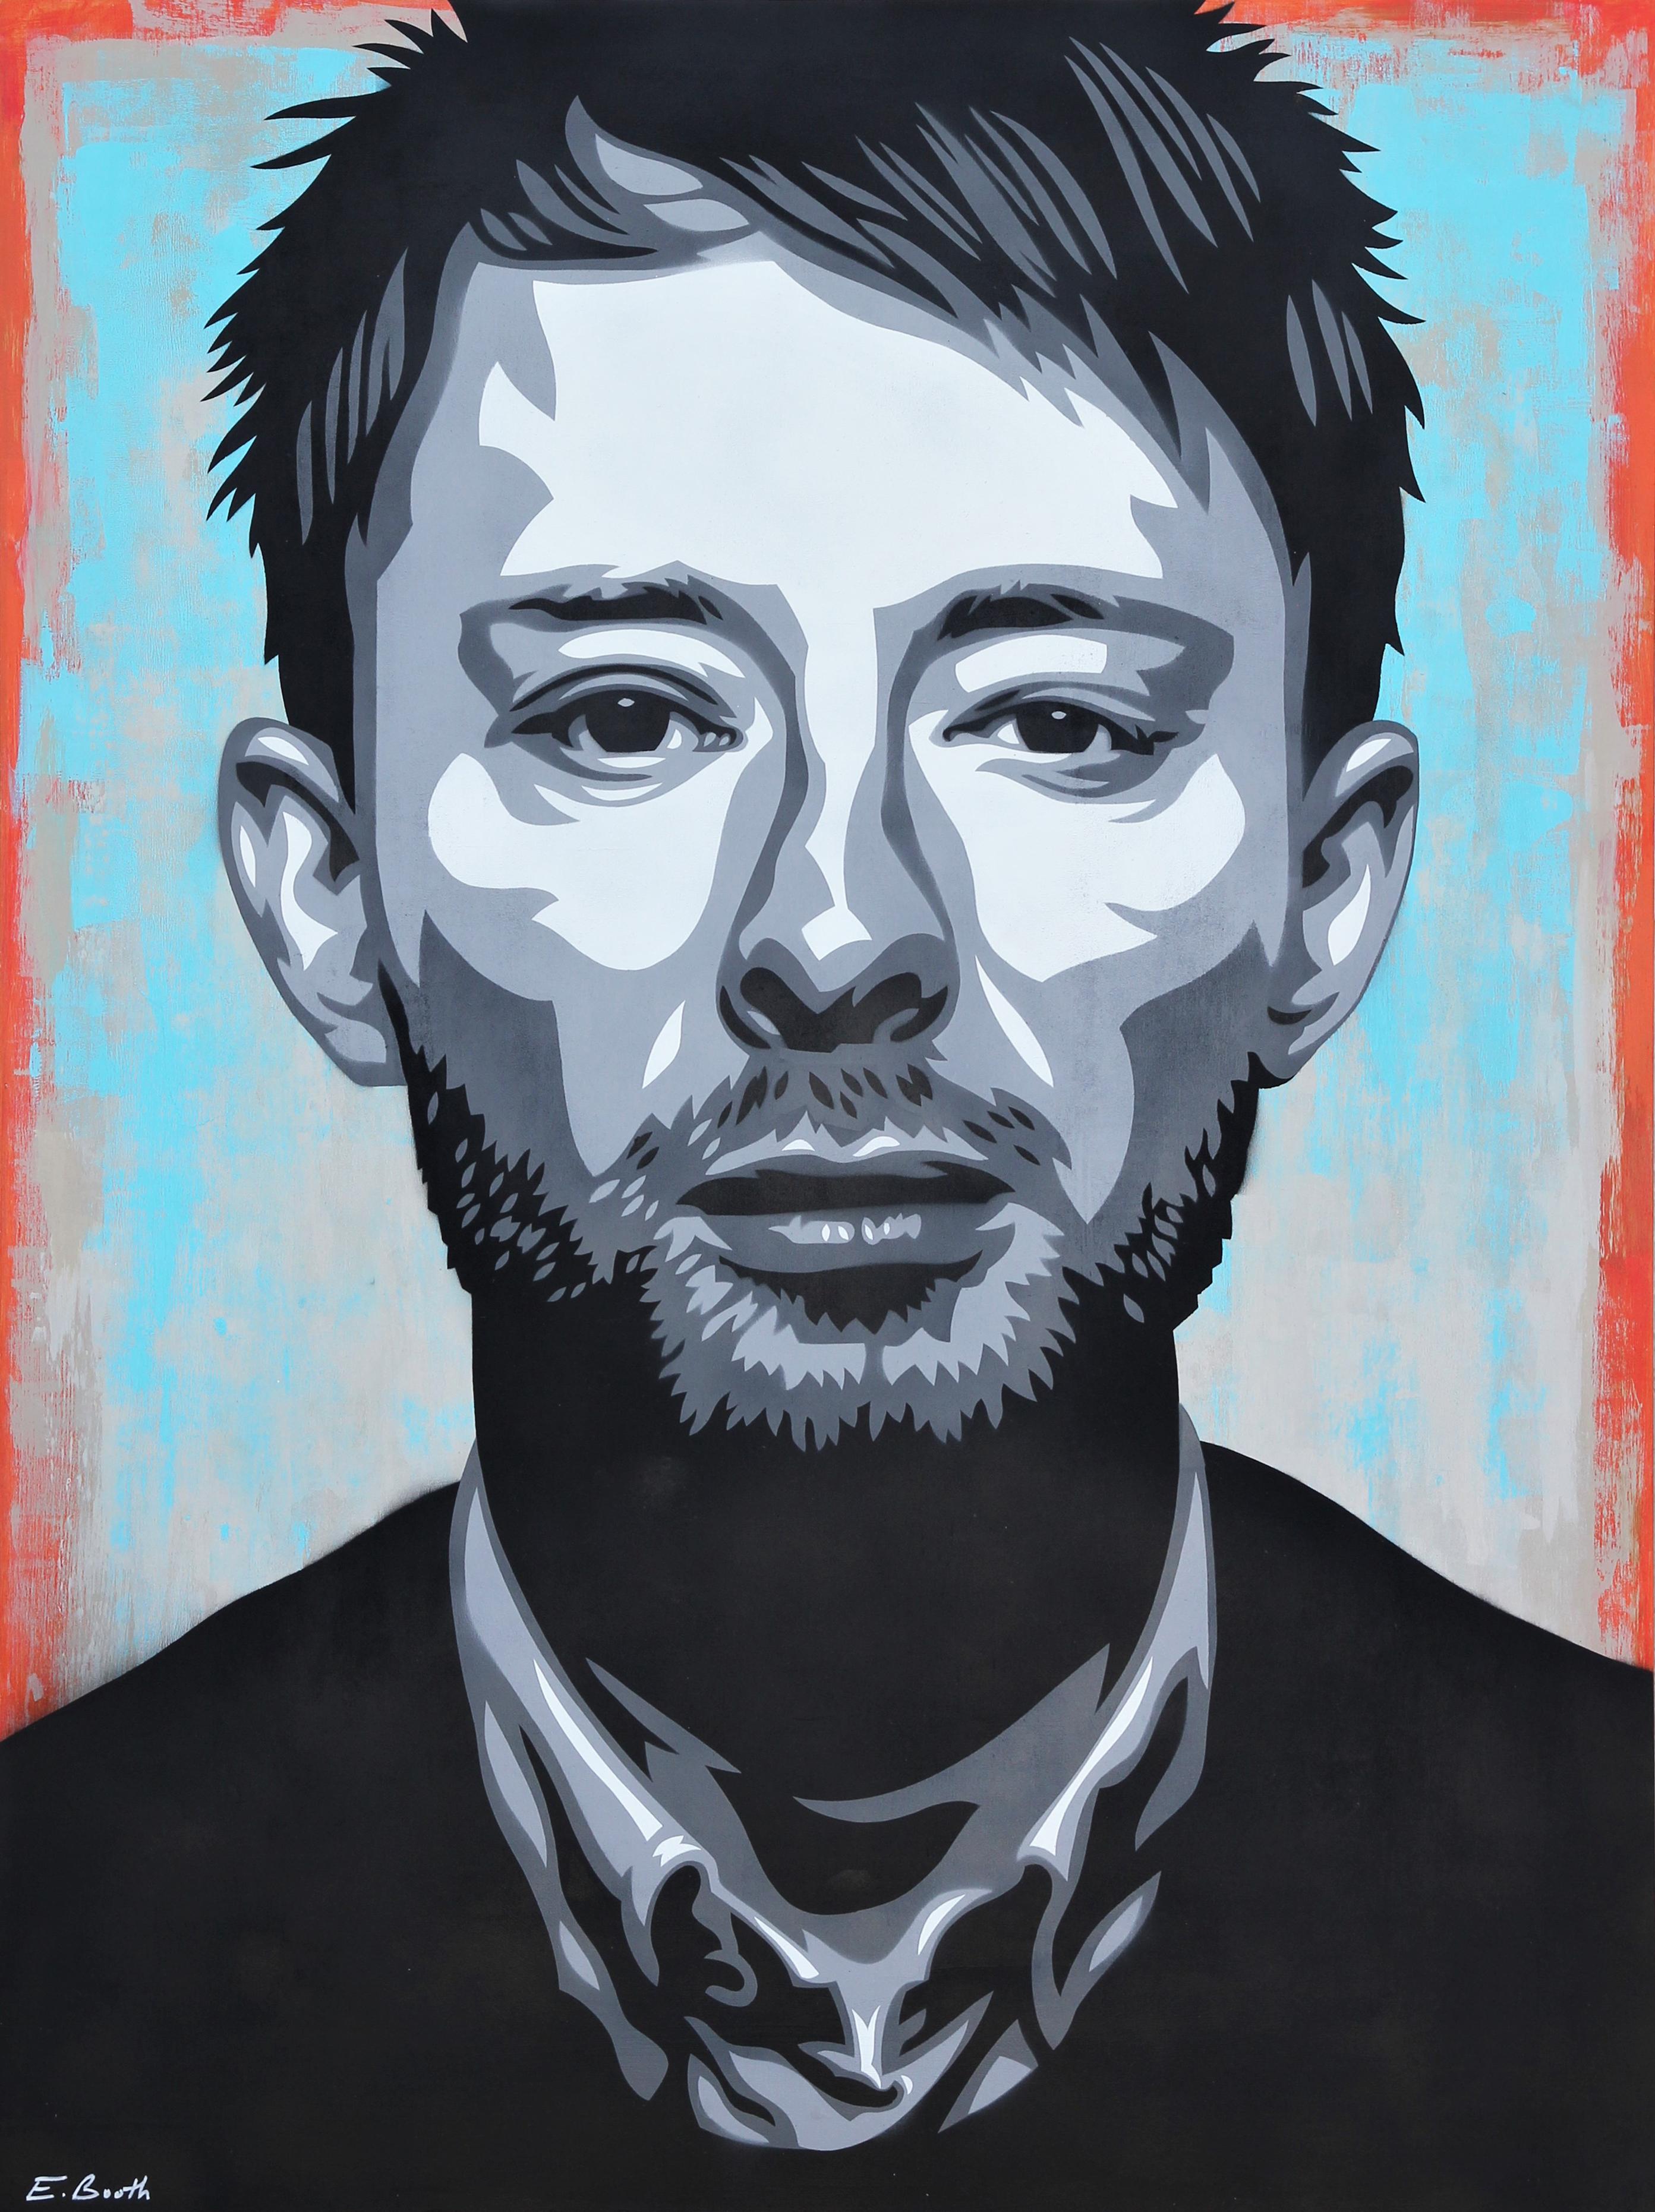 Ed Booth Abstract Painting – Thom Yorke House of Cards Zeitgenössisches abstraktes Porträt in Blau, Rot und Schwarz